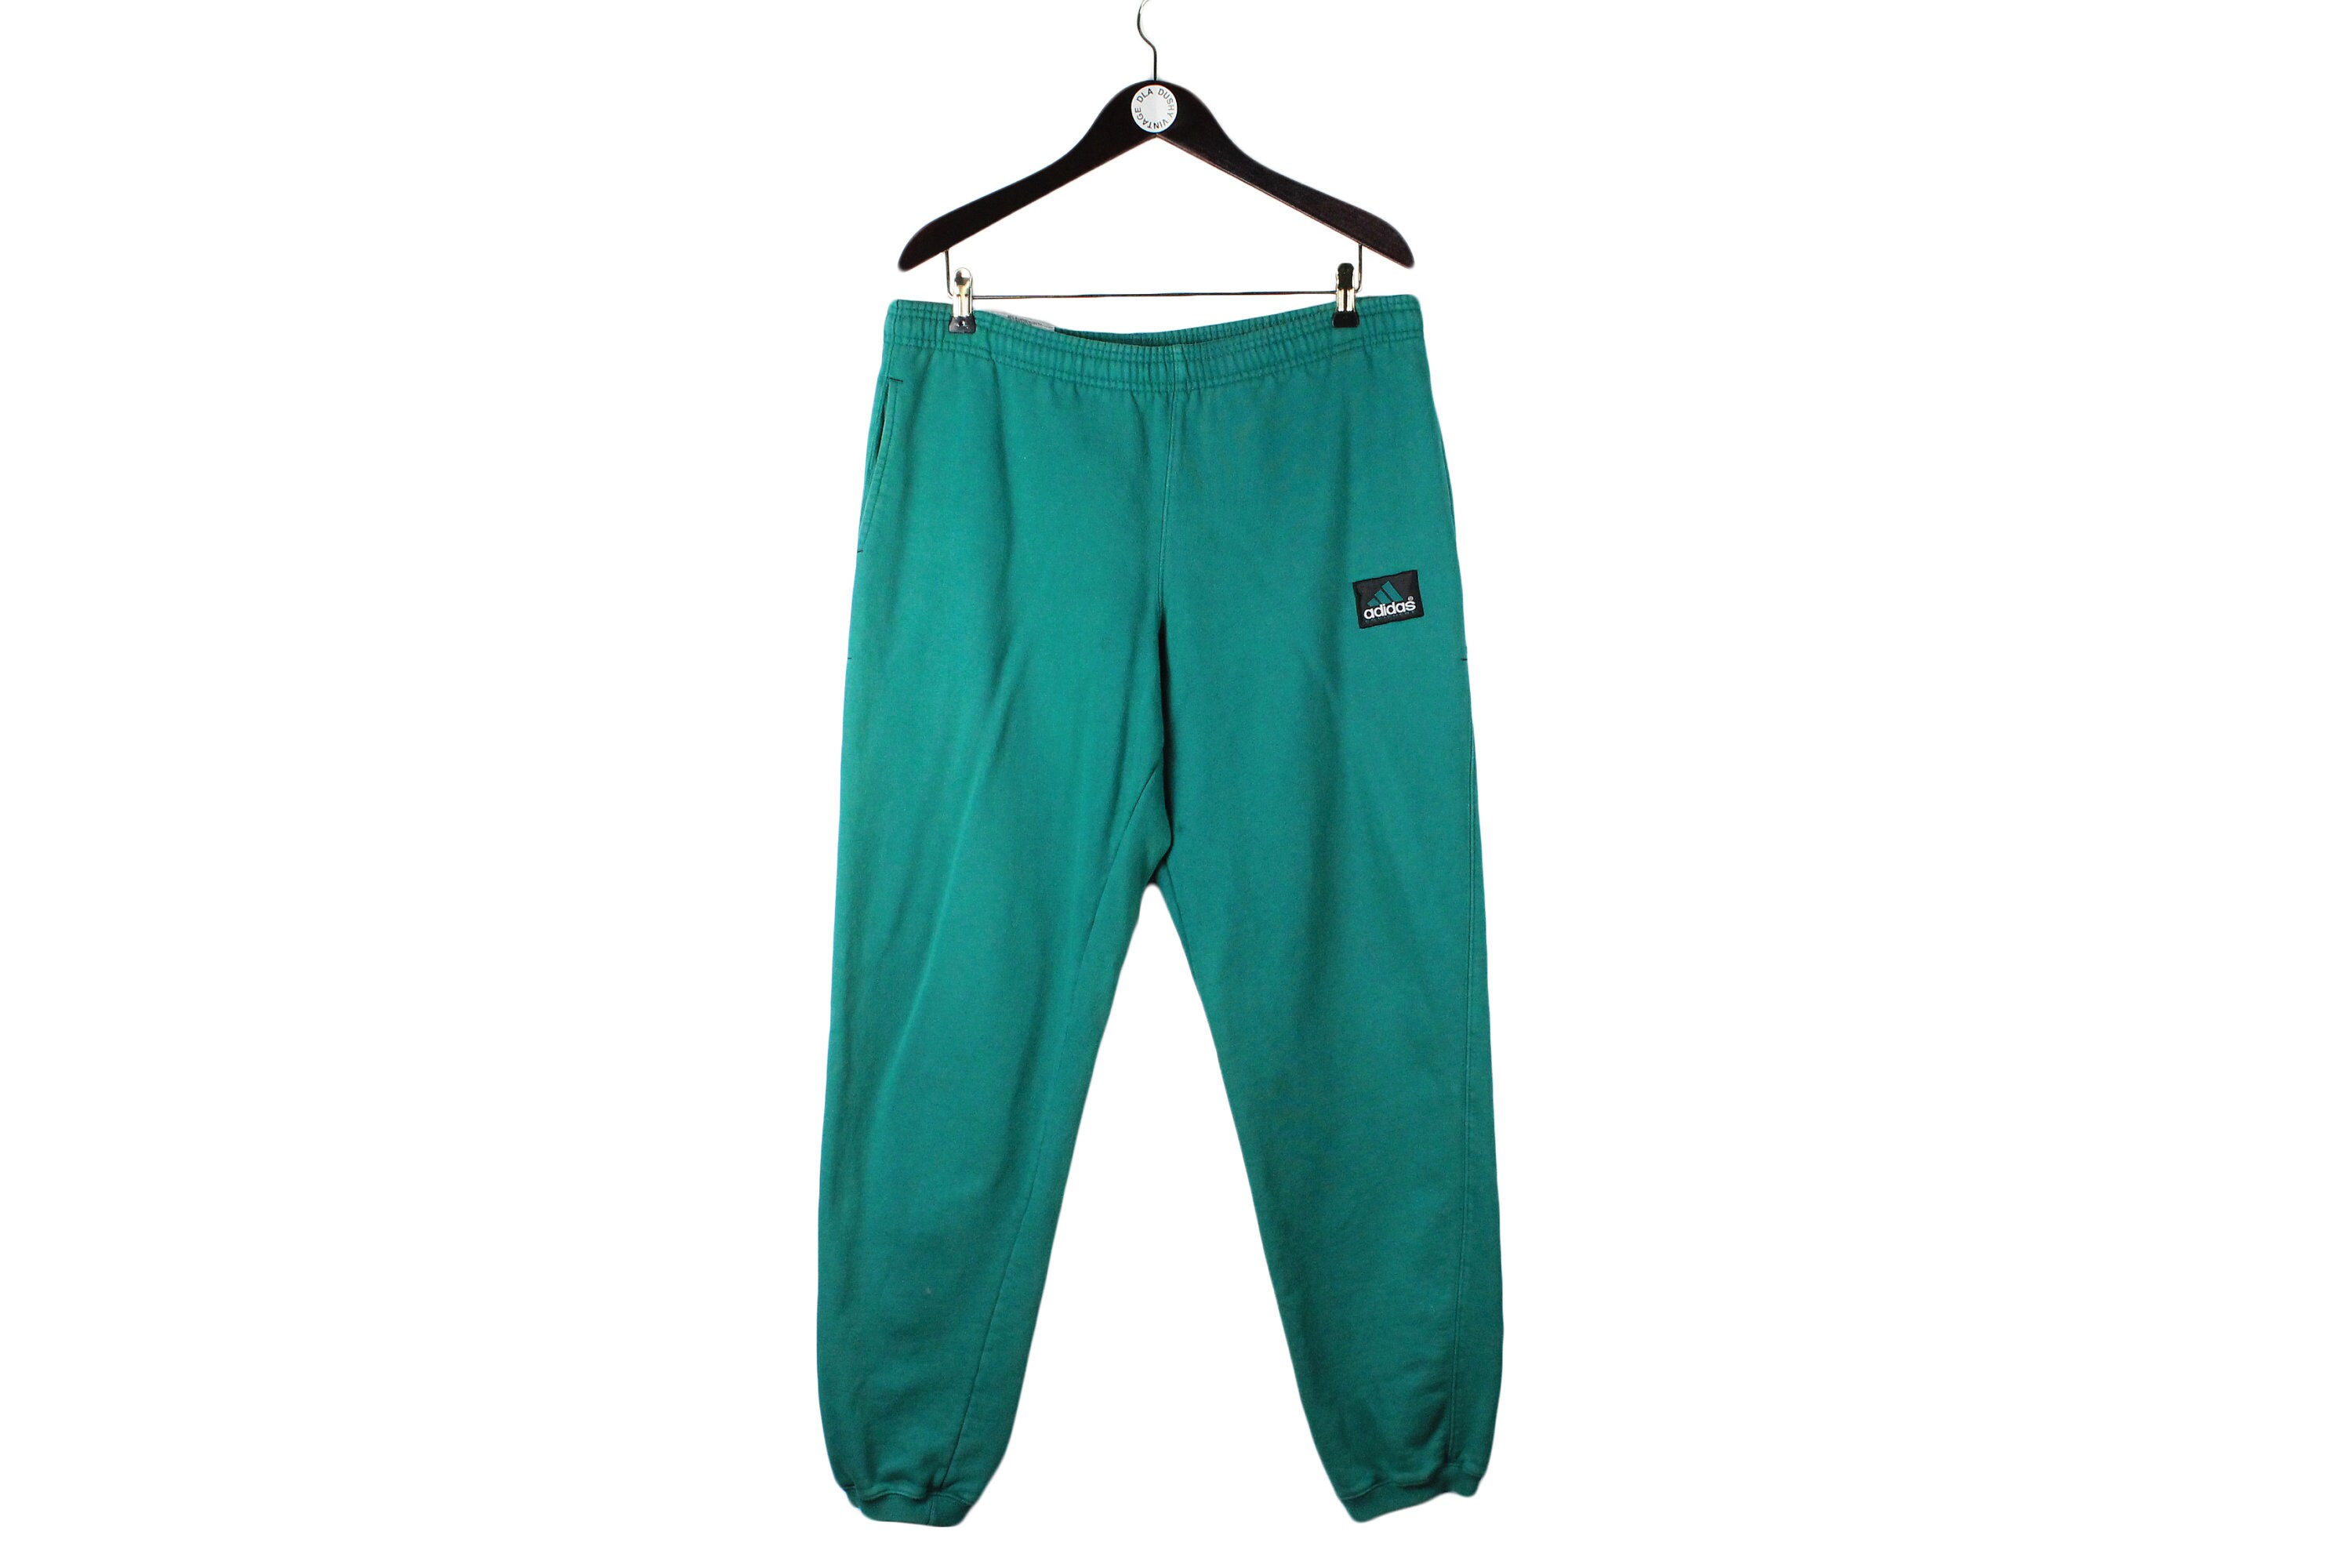 Vintage ADIDAS EQUIPMENT Men's Cotton Sweatpants Green Size XL